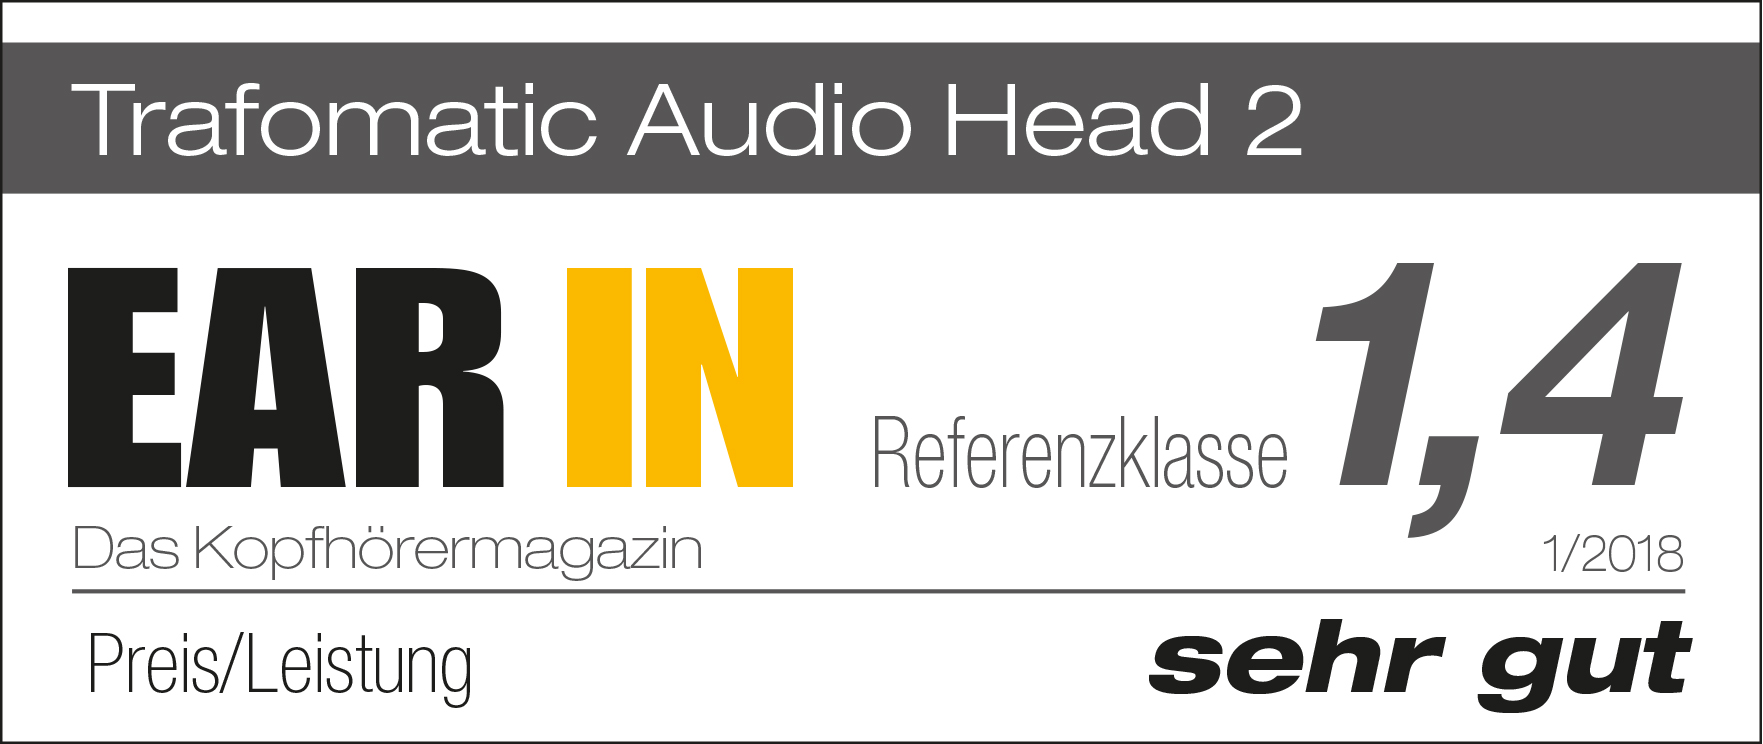 Head 2 von Trafomatik im Test von Ear In : www.audio-offensive.de      03322-2131655